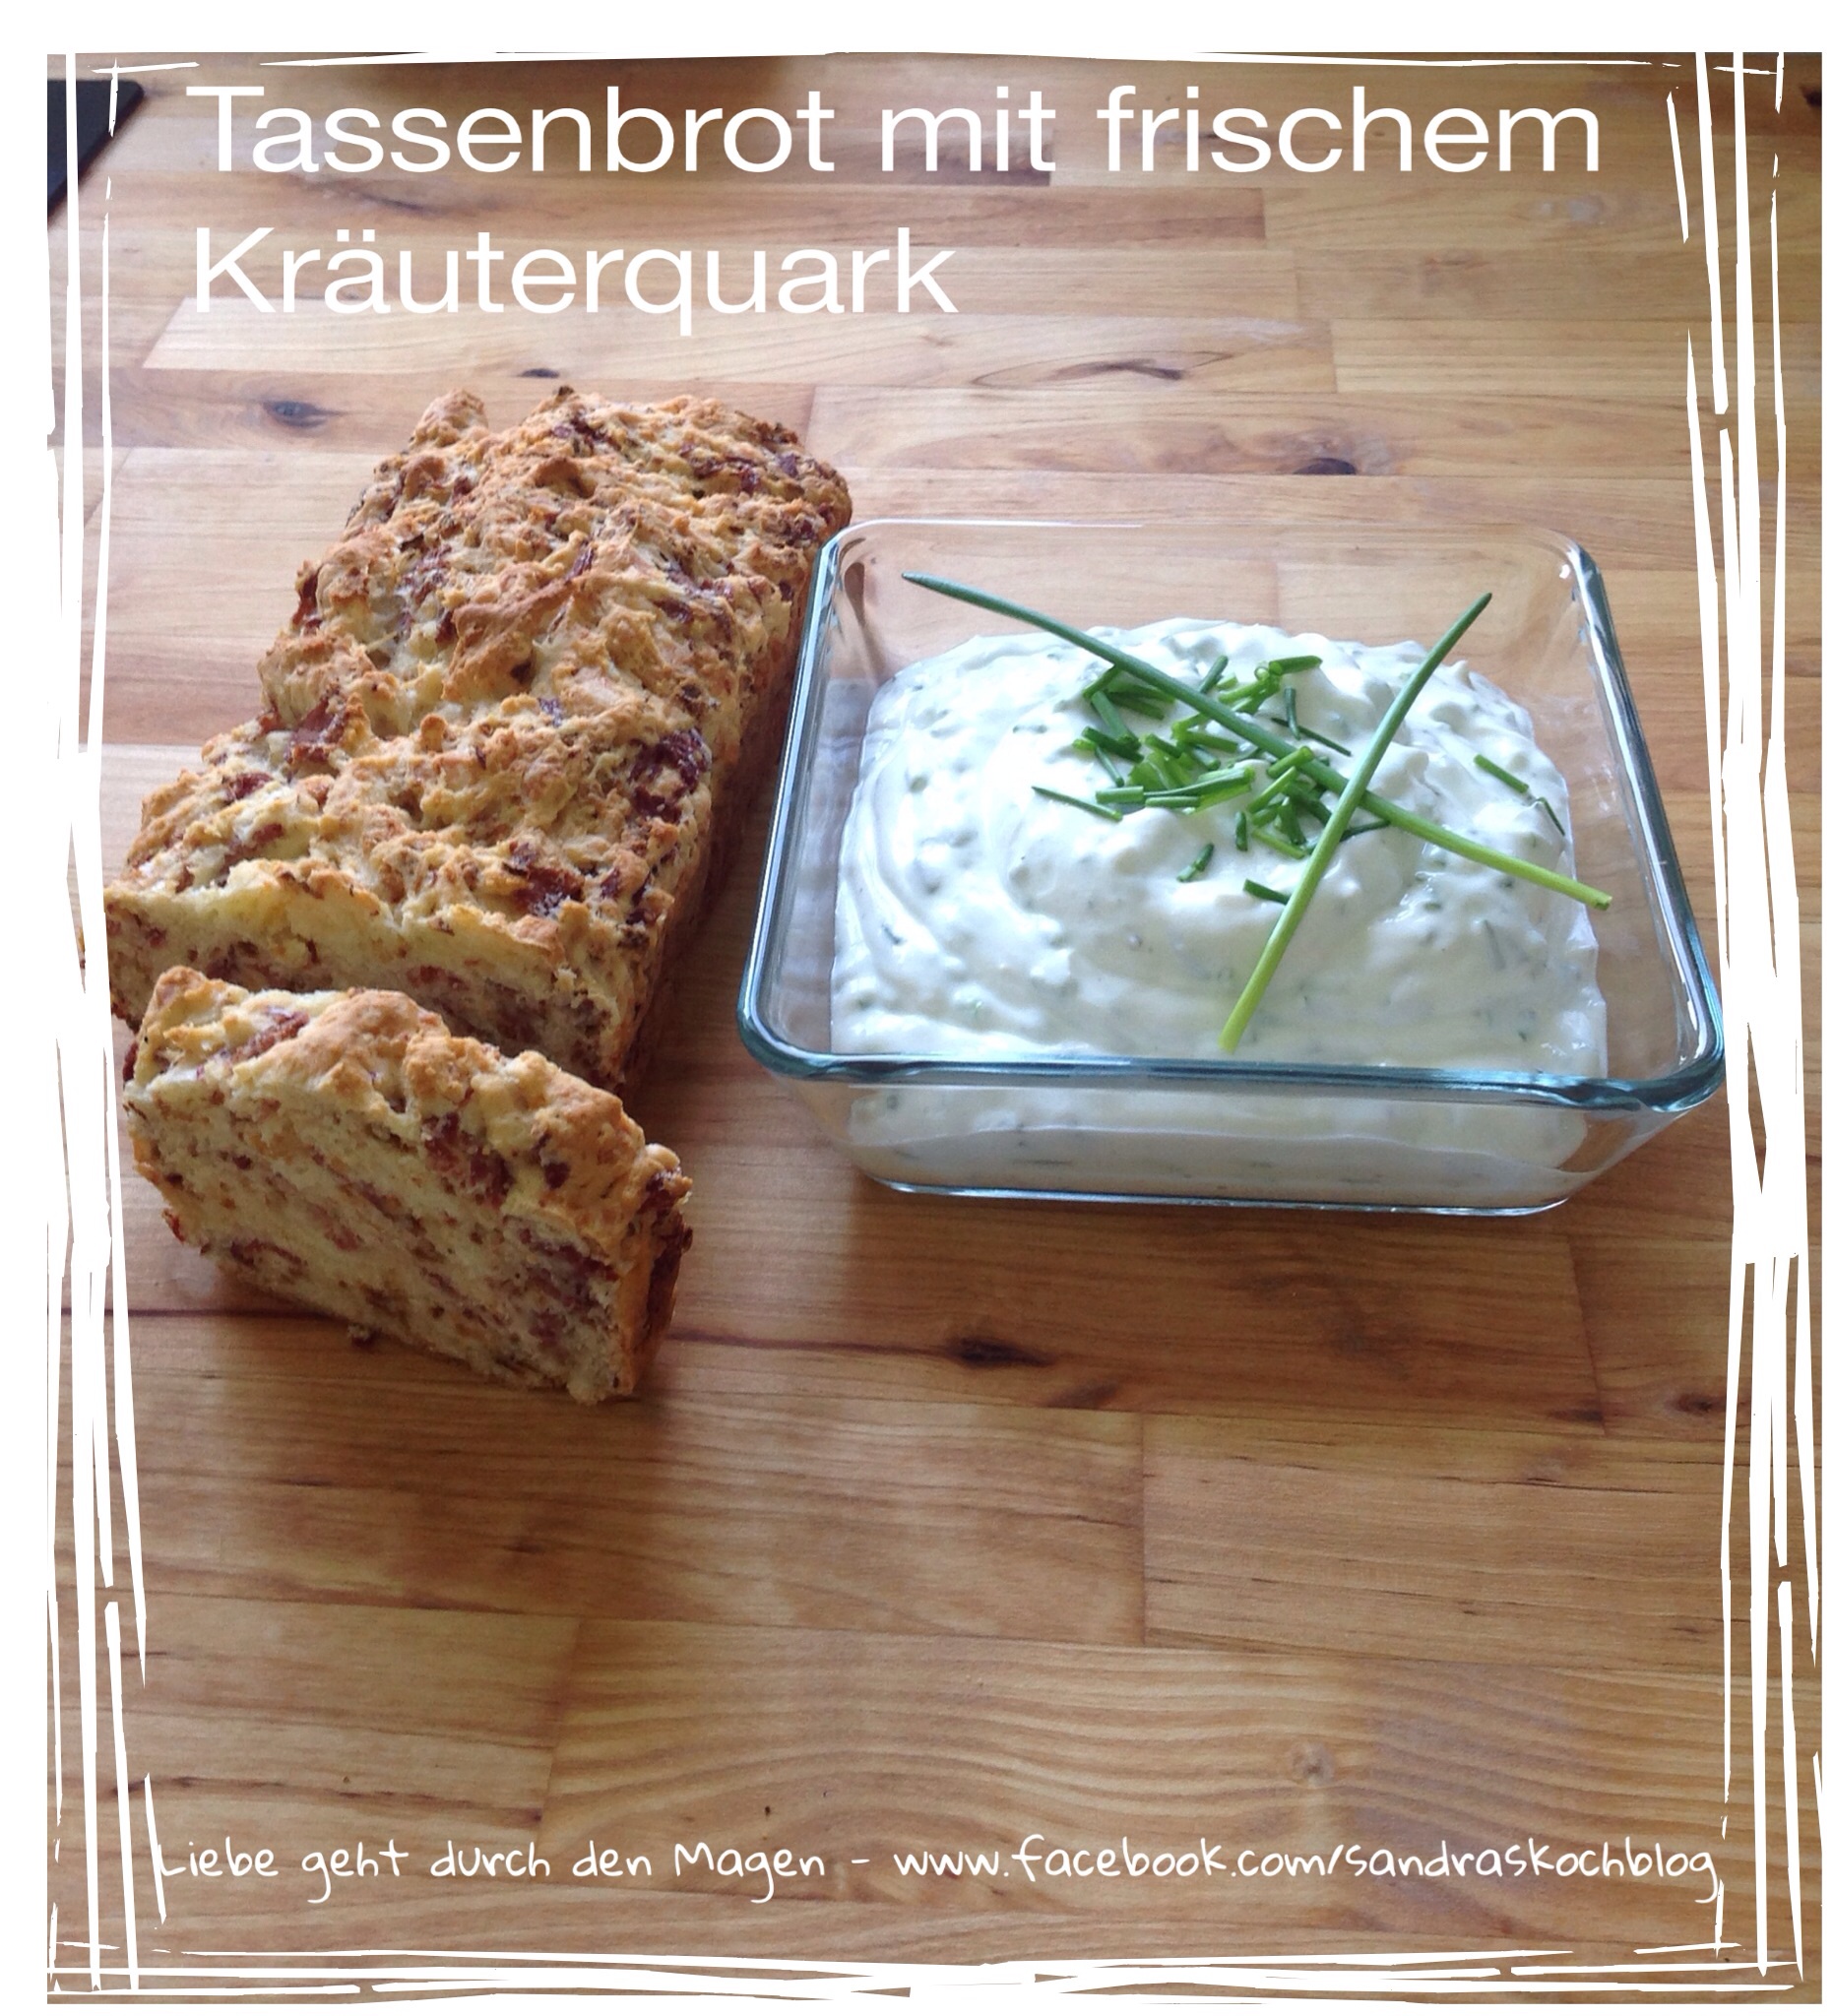 Tassenbrot mit frischem Kräuterquark - Sandras Kochblog